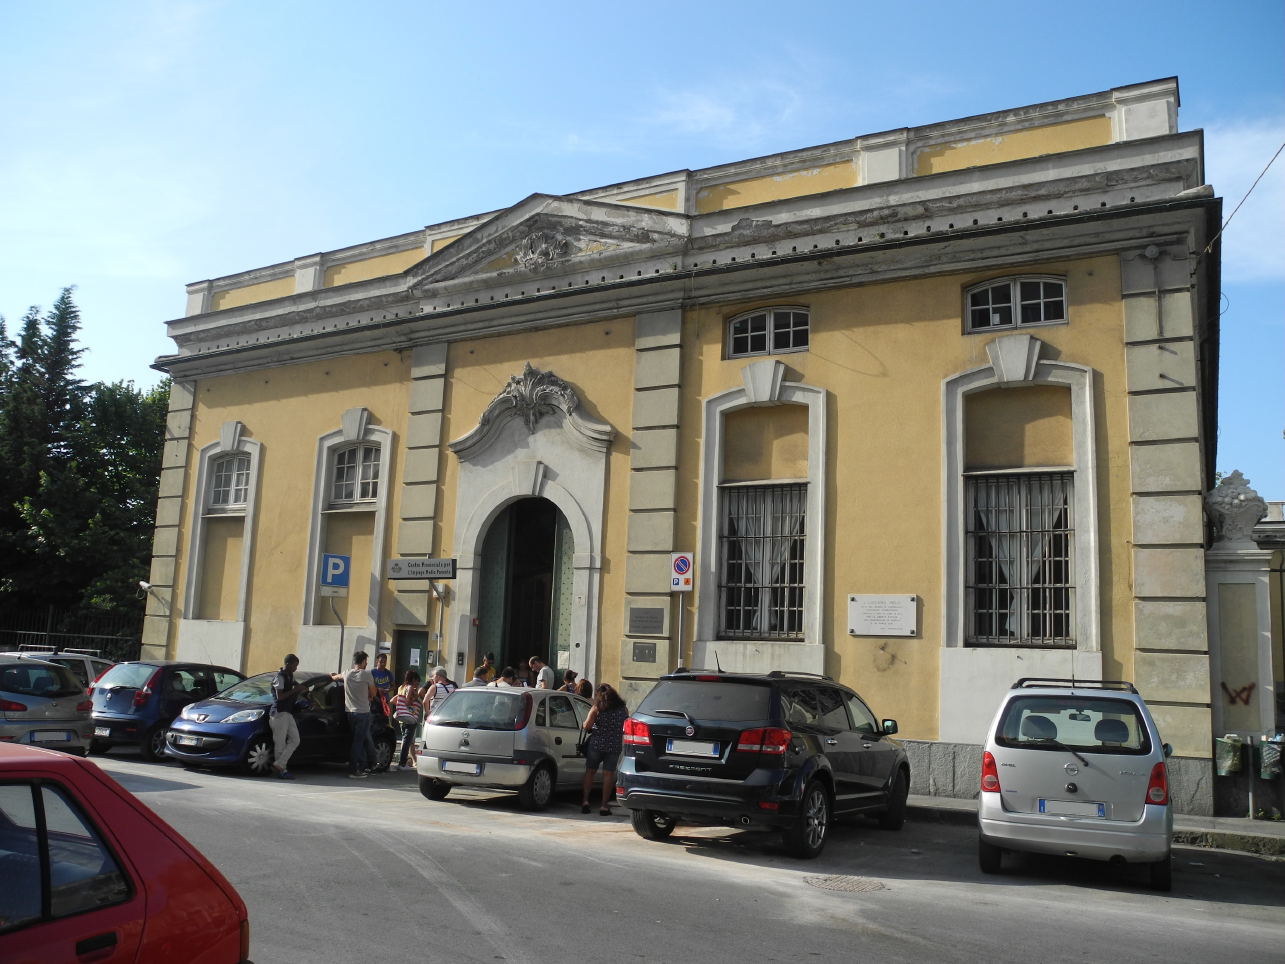 Villa Durazzo Bombrini (villa, nobiliare) - Genova (GE) 